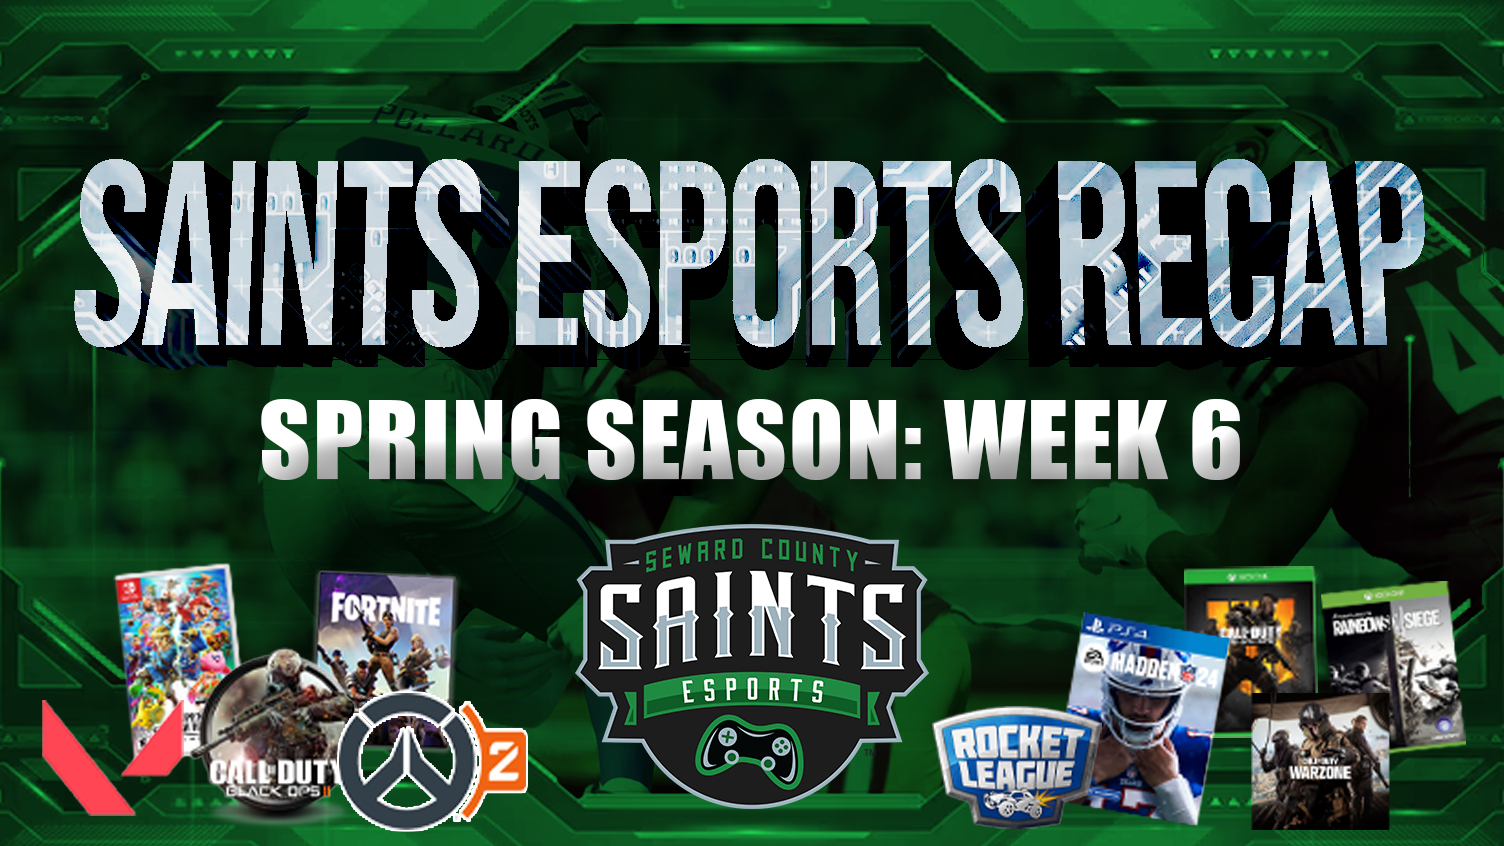 Saints Esports Weekly Recap